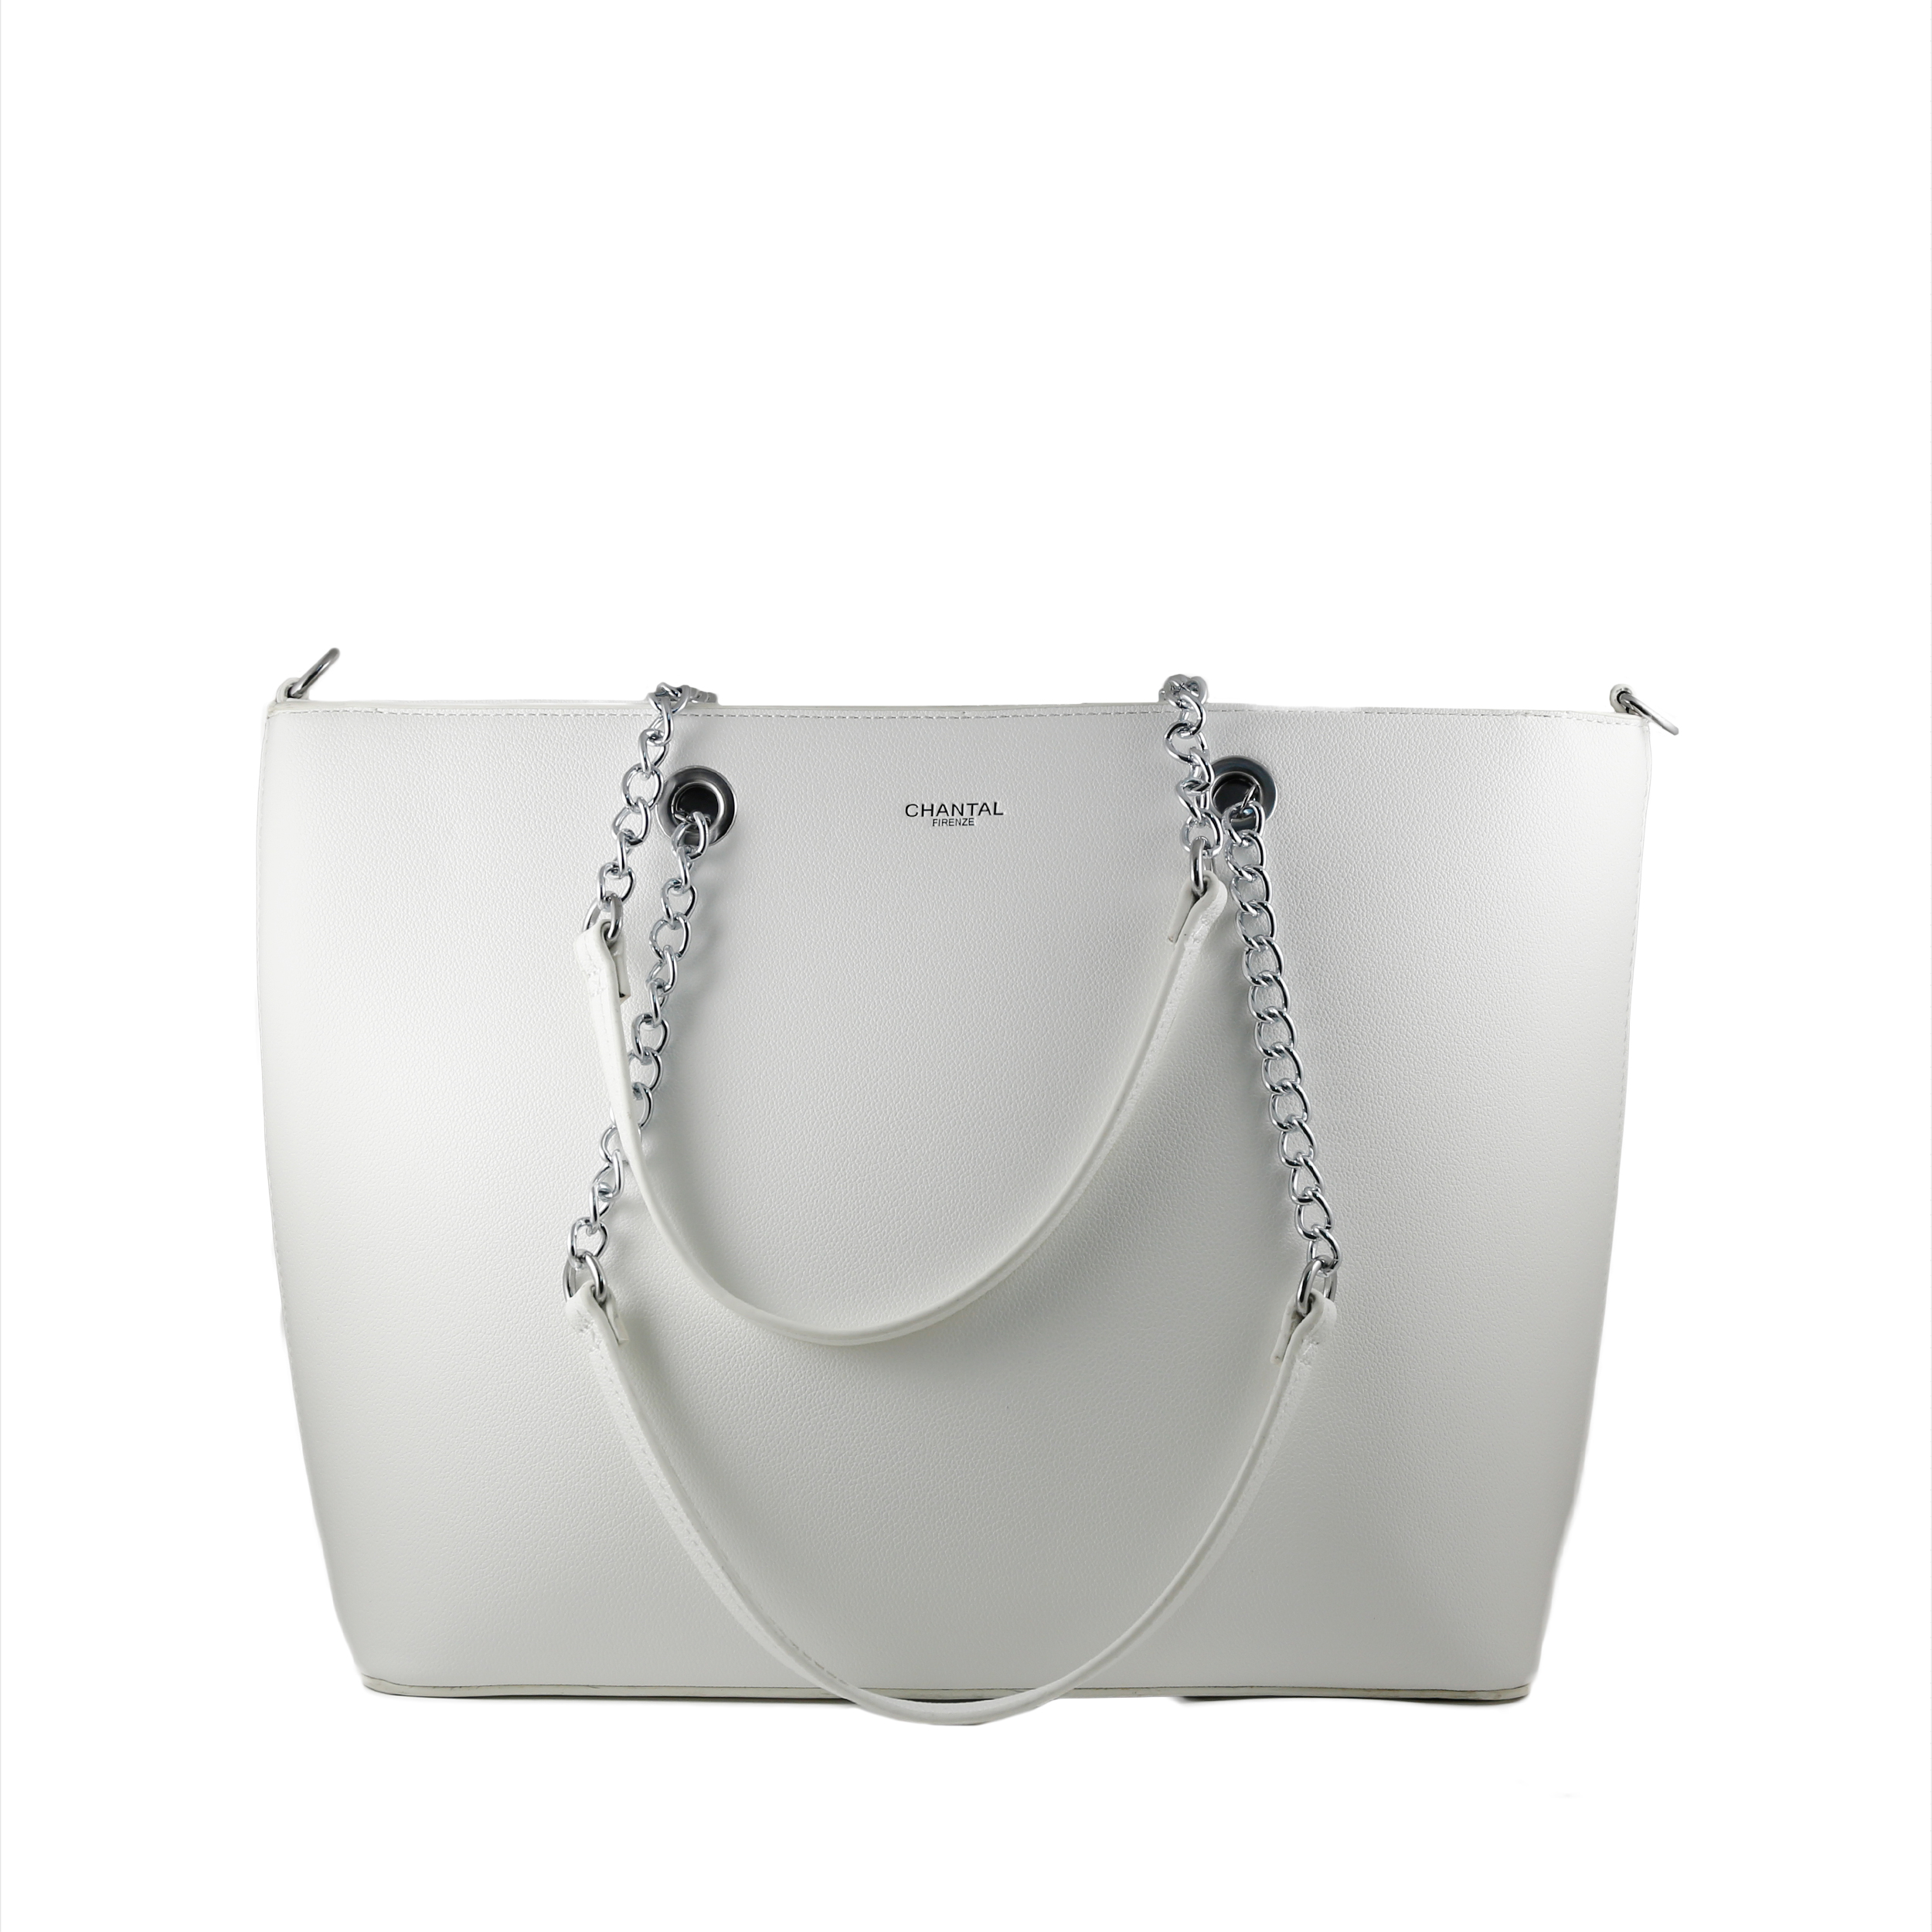 Woman Bags Shoulder & Handbag Handbag with chains